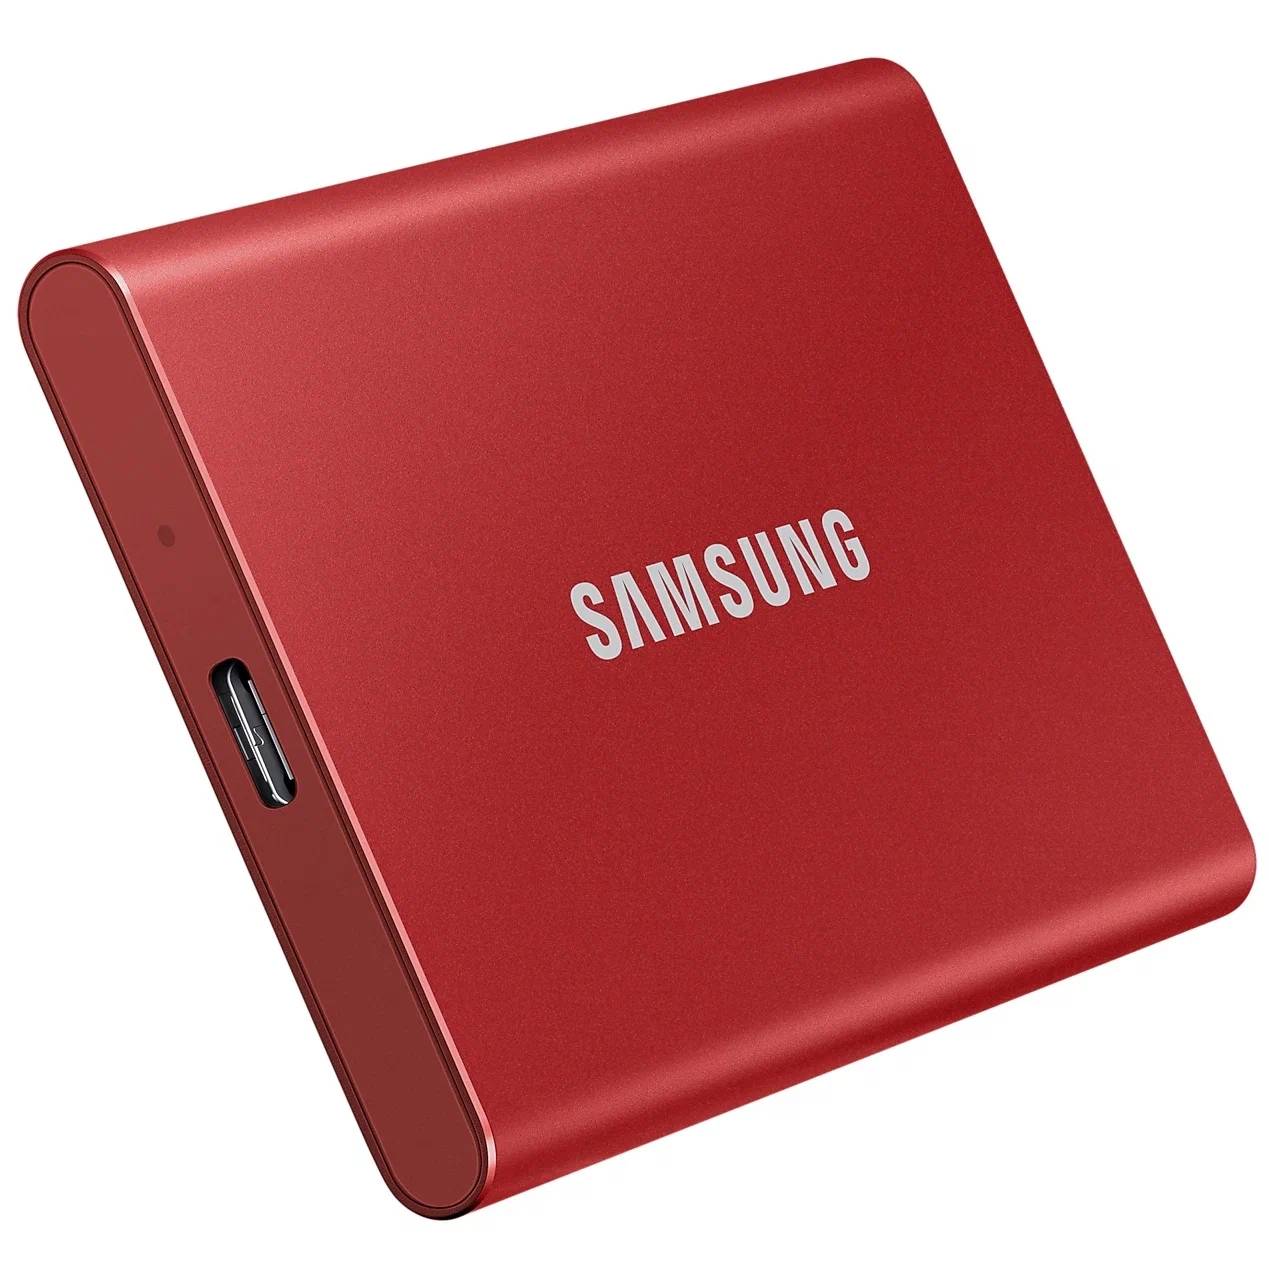 SSD Samsung T7 SSD, 2 ТБ, красный